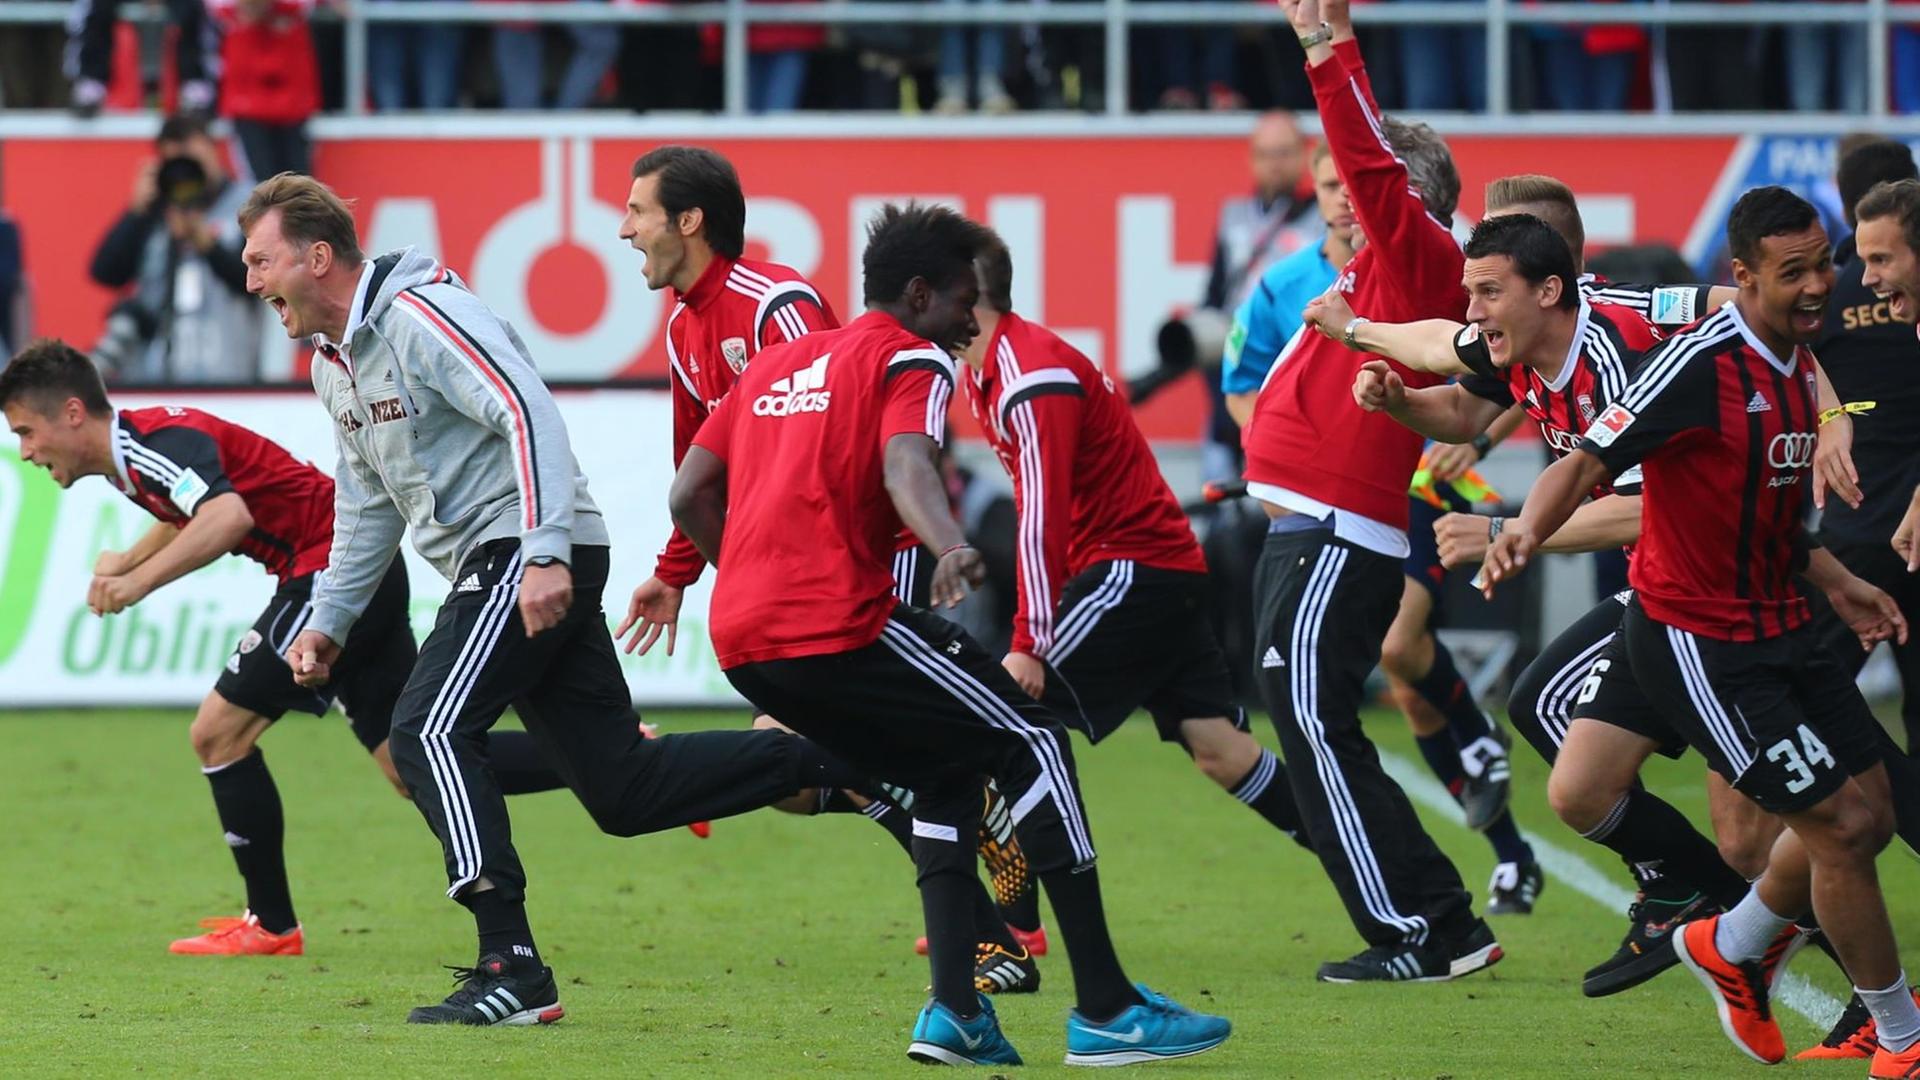 Die Spieler des FC Ingolstadt stürmen nach dem Abpfiff der Partie gegen RB Leipzig jubelnd über den Platz und feiern den vorzeitig gesicherten Bundesliga-Aufstieg. Die Spieler tragen schwarz-rote-Trikots. In erster Reihe jubelt auch Trainer Ralph Hasenhüttl